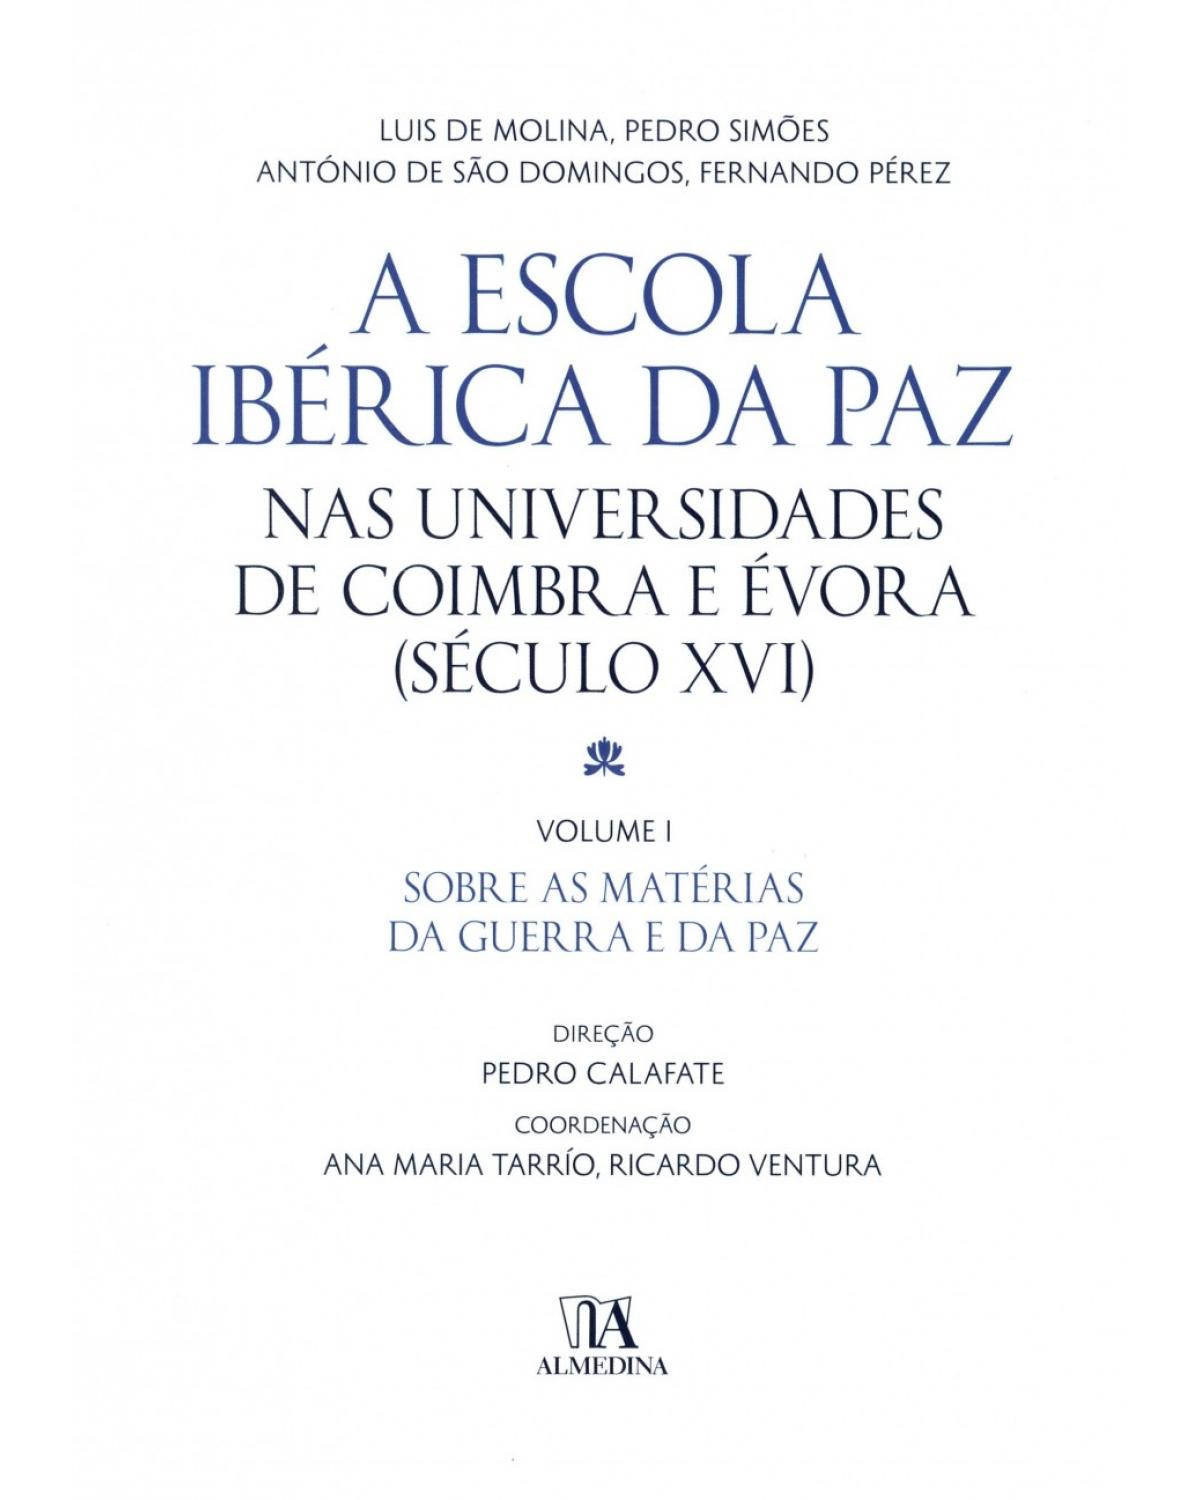 A Escola Ibérica da Paz nas universidades de Coimbra e Évora - Volume 1: (século XVI) - Sobre as matérias da guerra e da paz - 1ª Edição | 2015